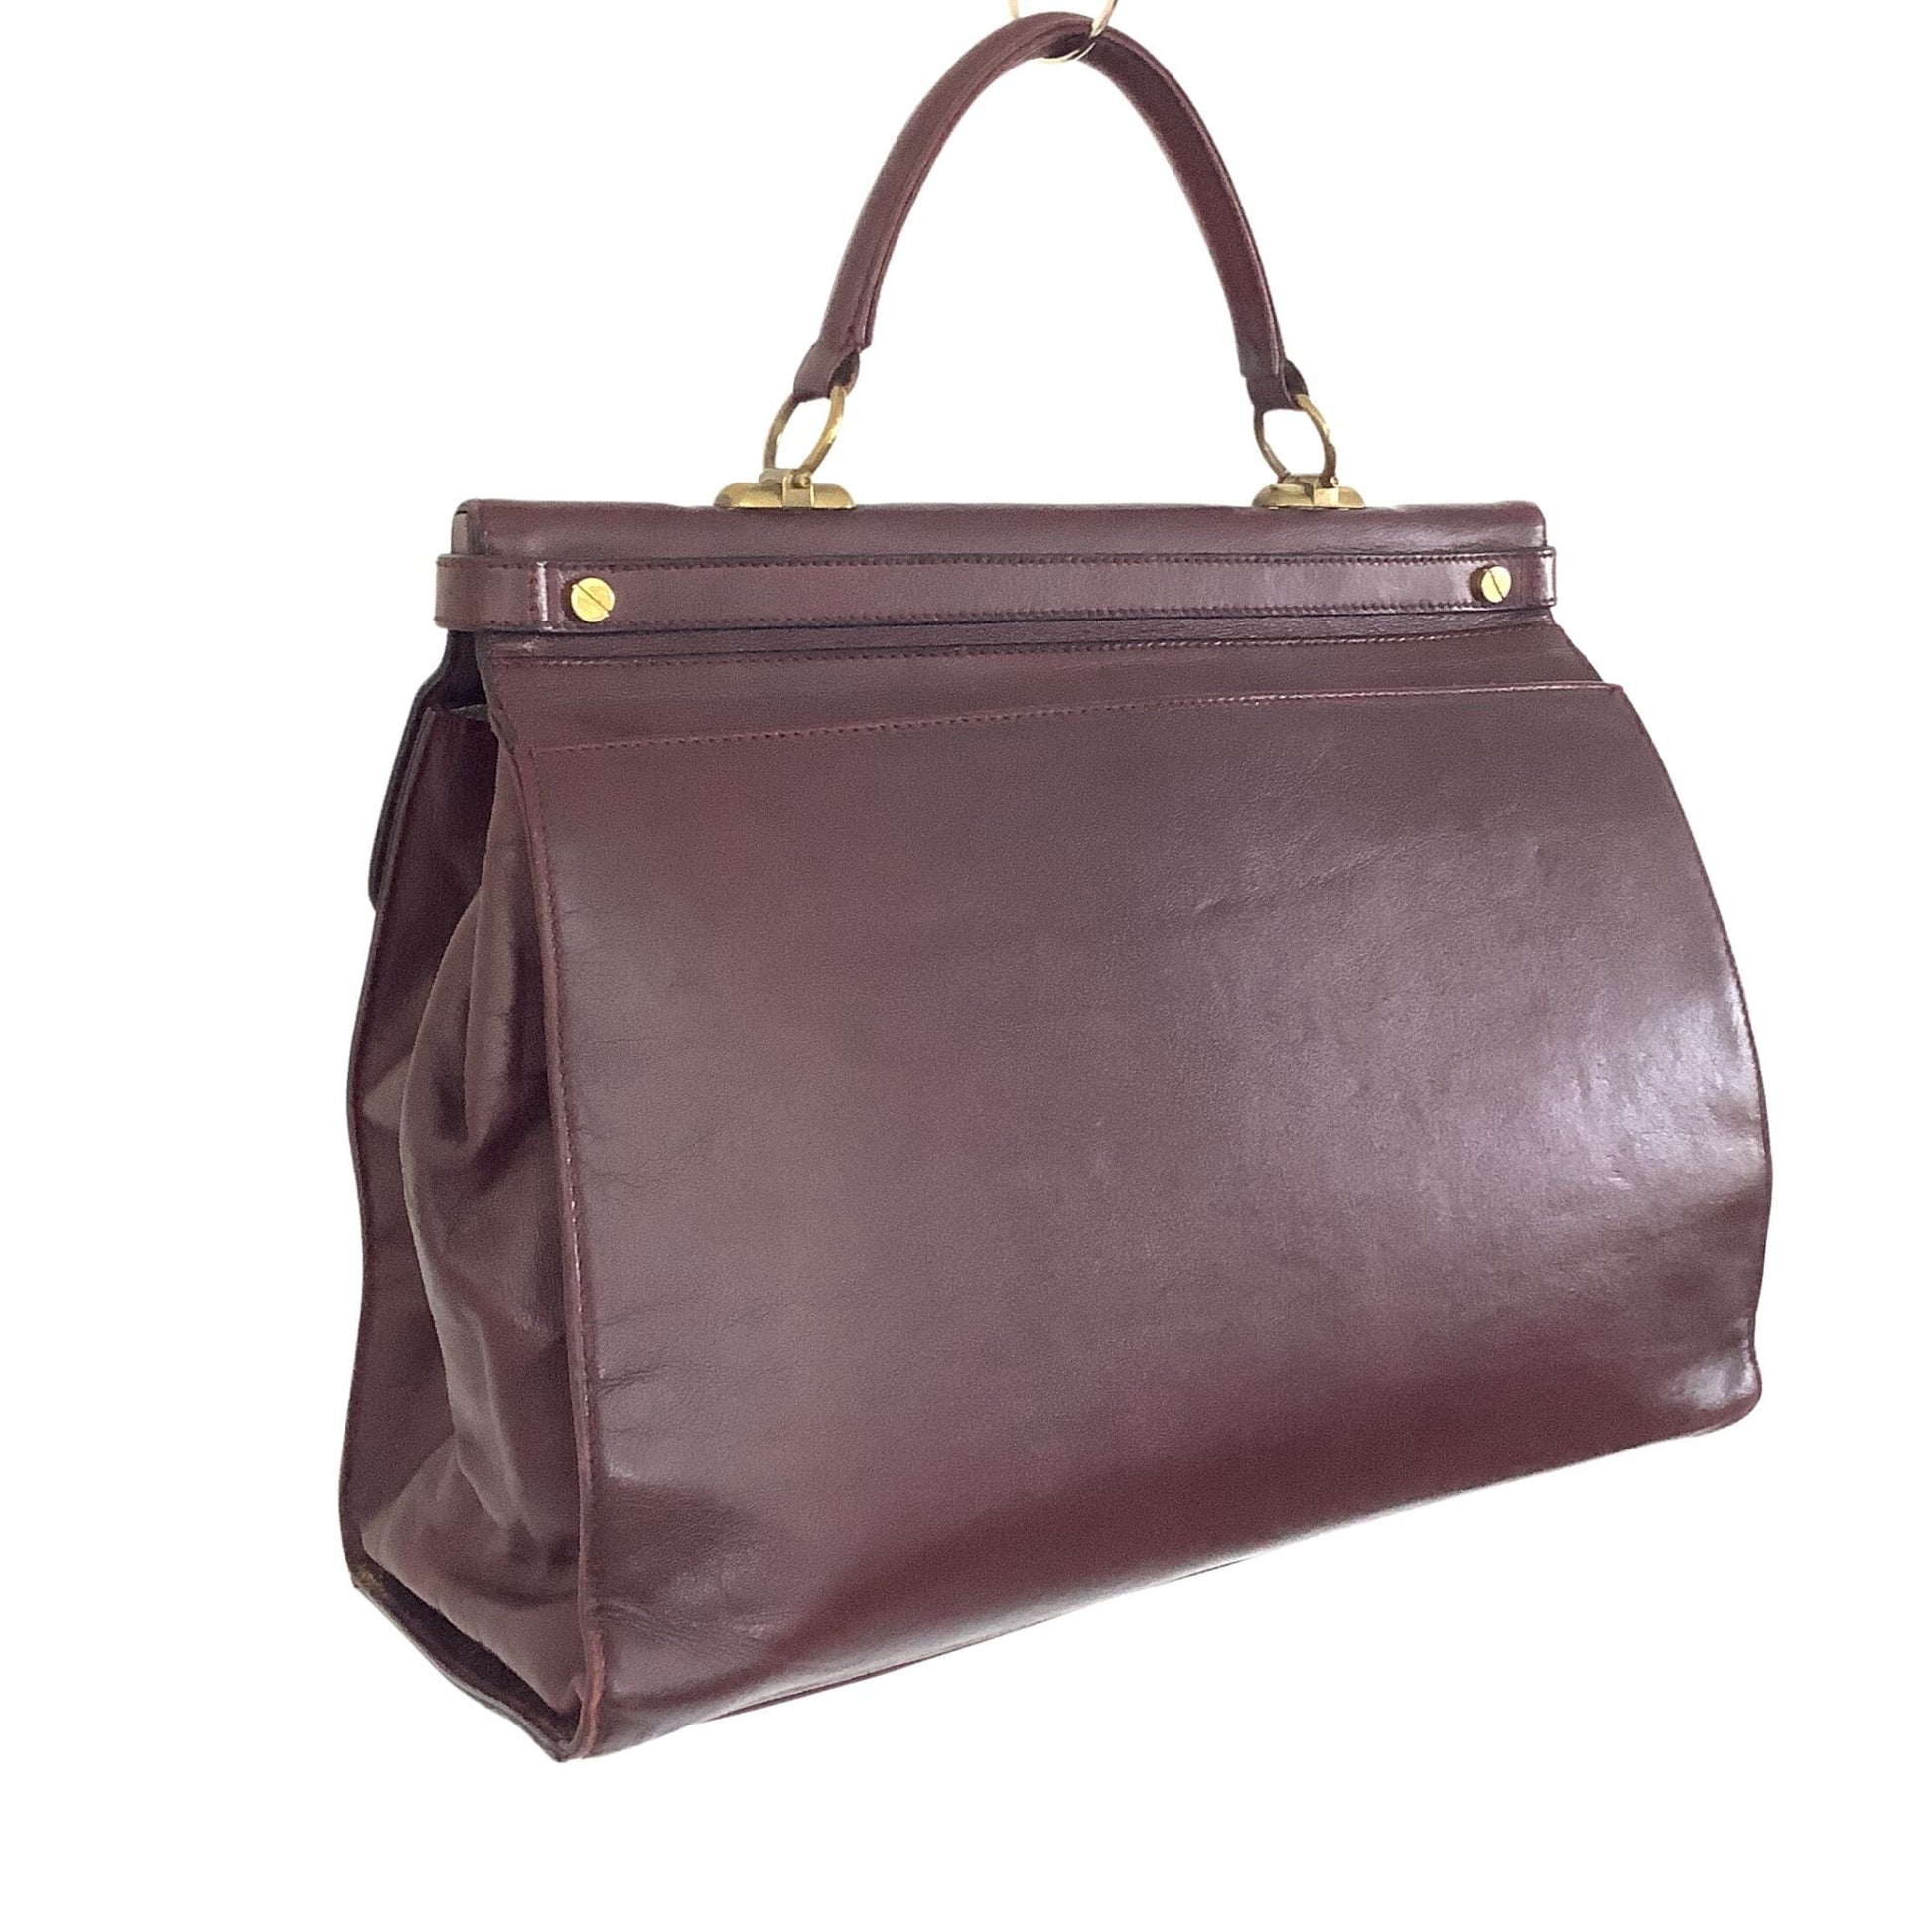 VTG Gold Pfeil Bag Burgundy / Leather / Vintage 1980s